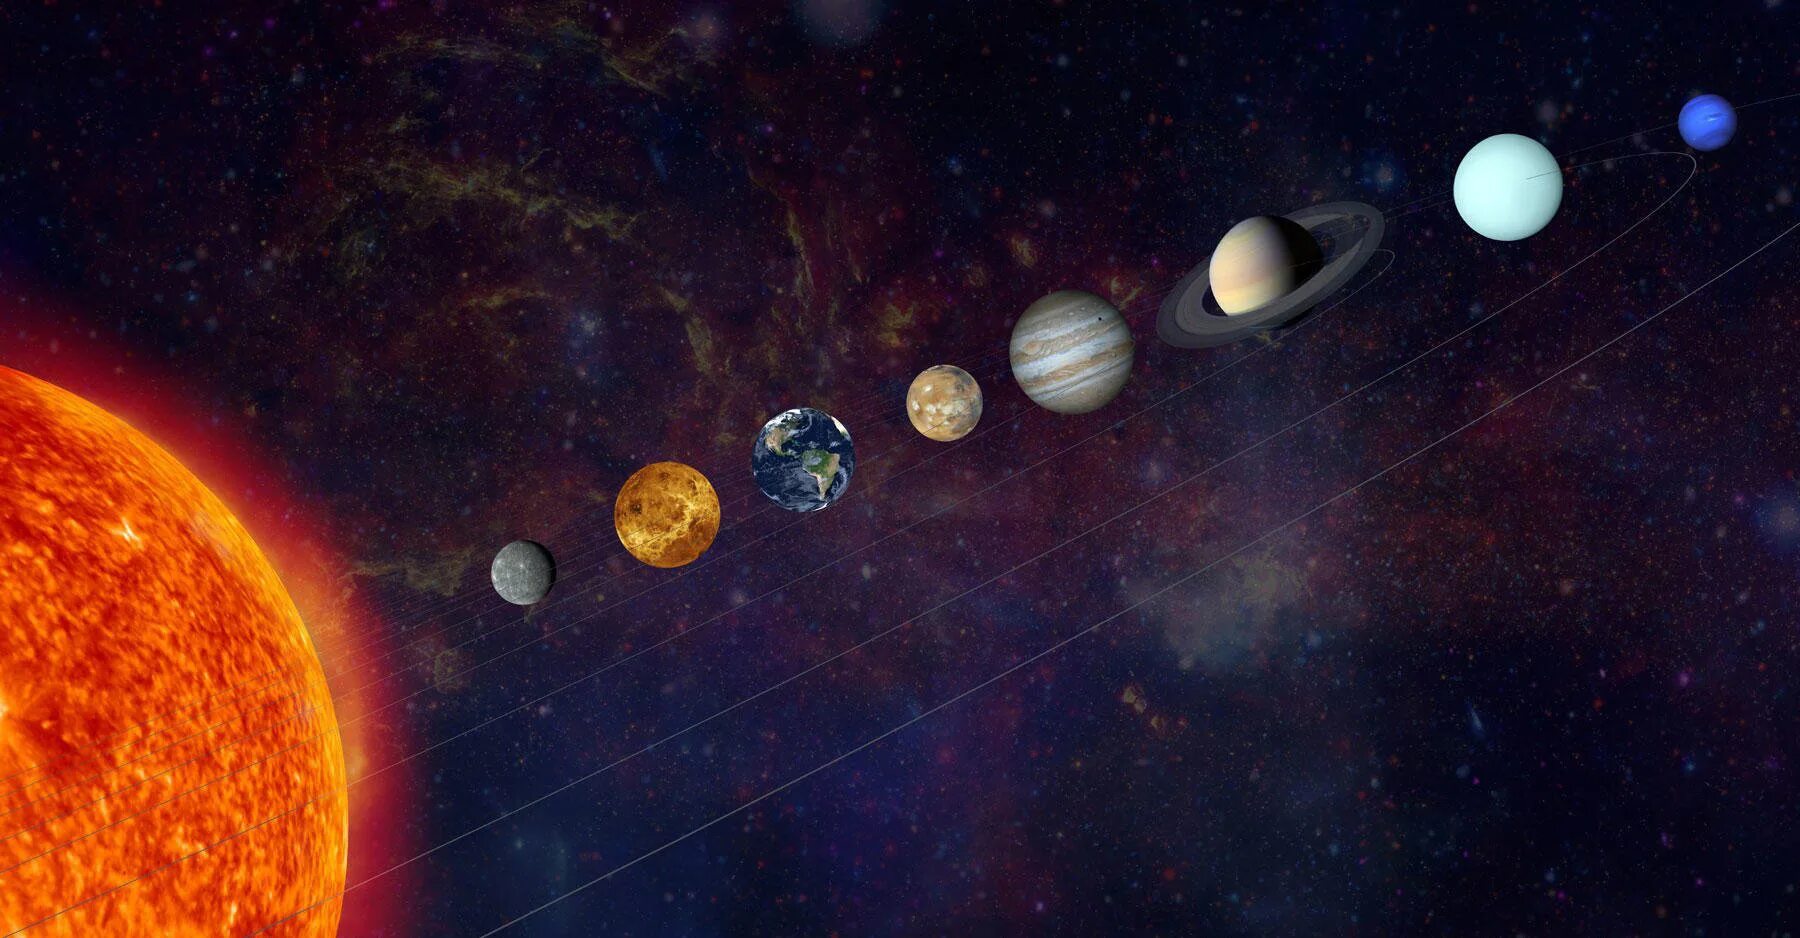 Планета земля и другие 7 планет. Сонячна система. Космос планеты солнечной системы. Парад планет из космоса. Космос планеты в ряд.